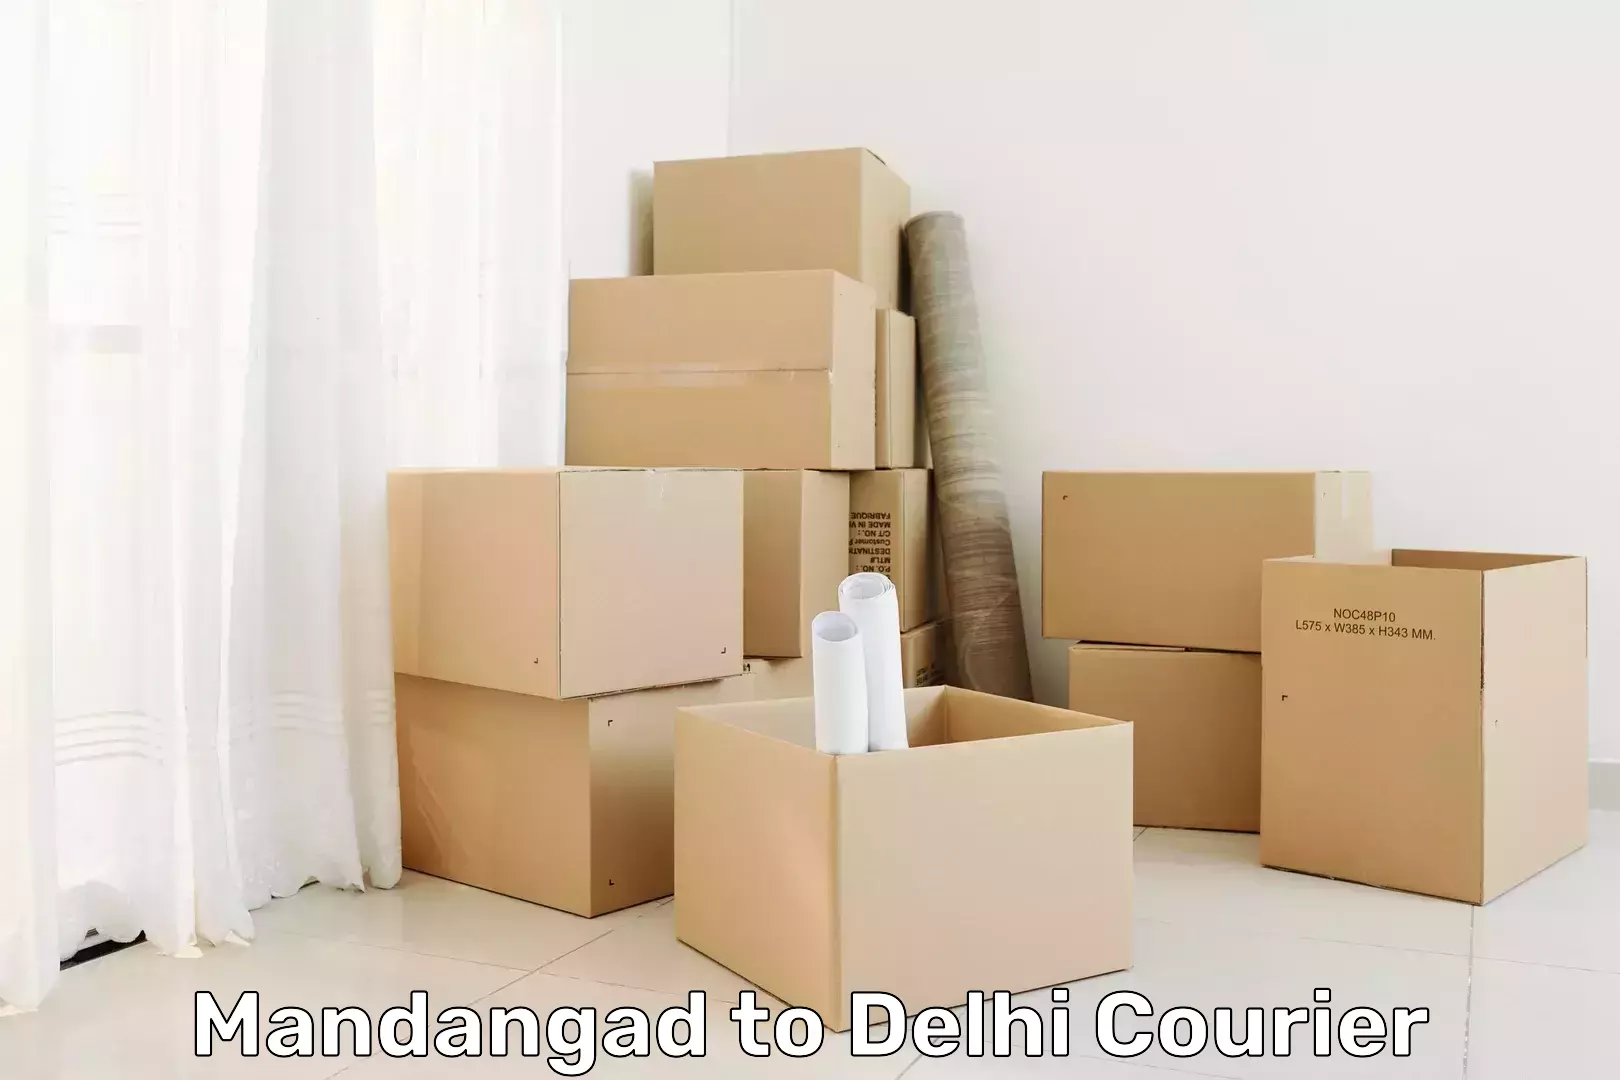 Reliable logistics providers Mandangad to Delhi